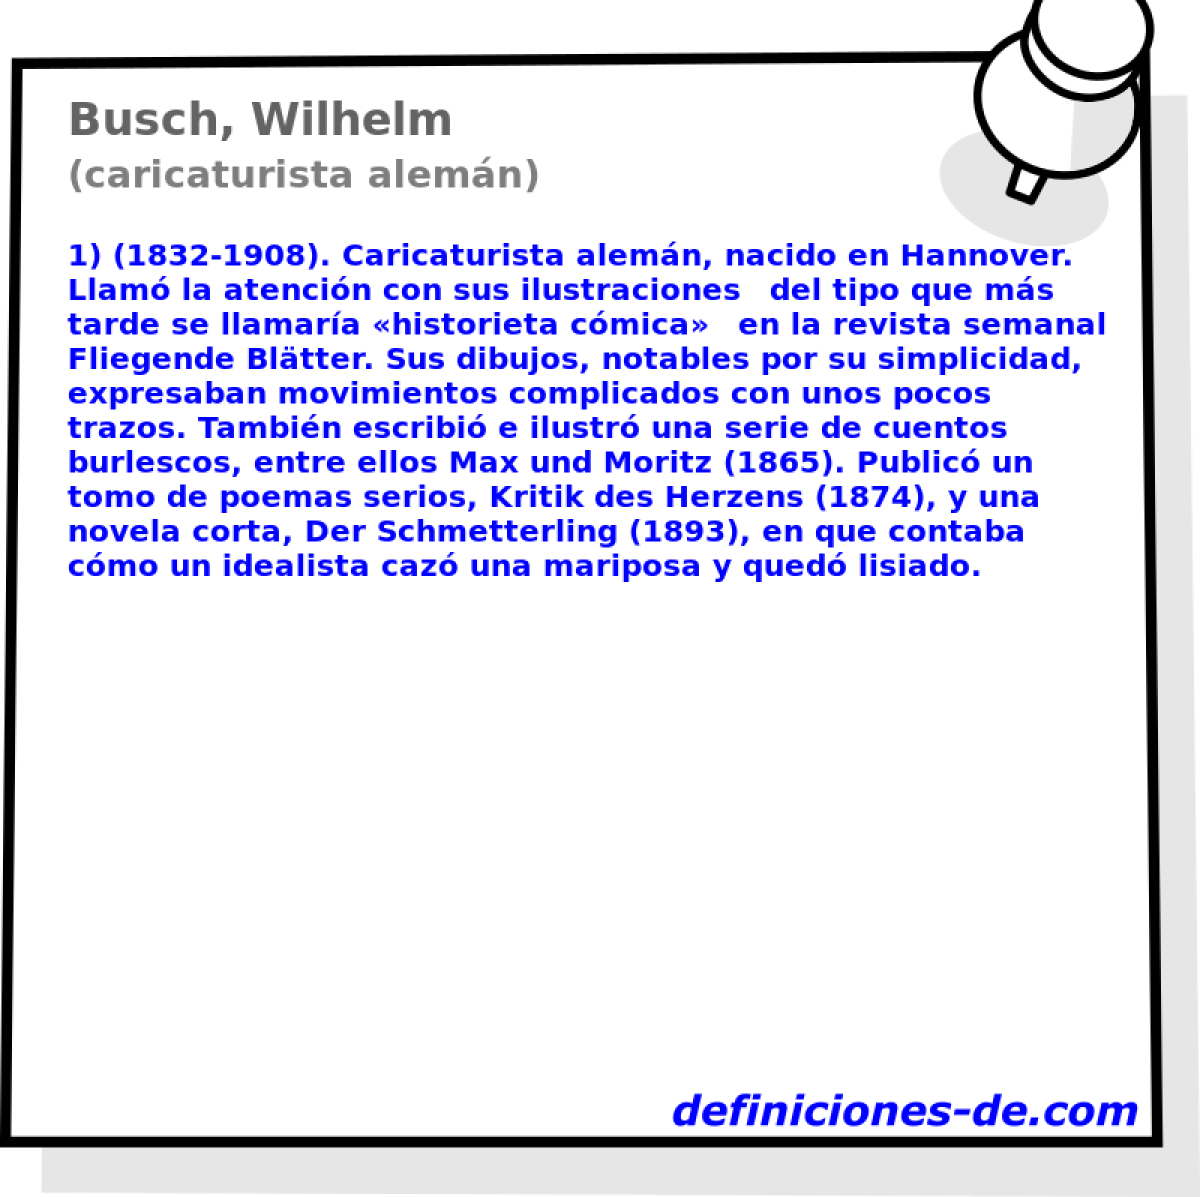 Busch, Wilhelm (caricaturista alemn)